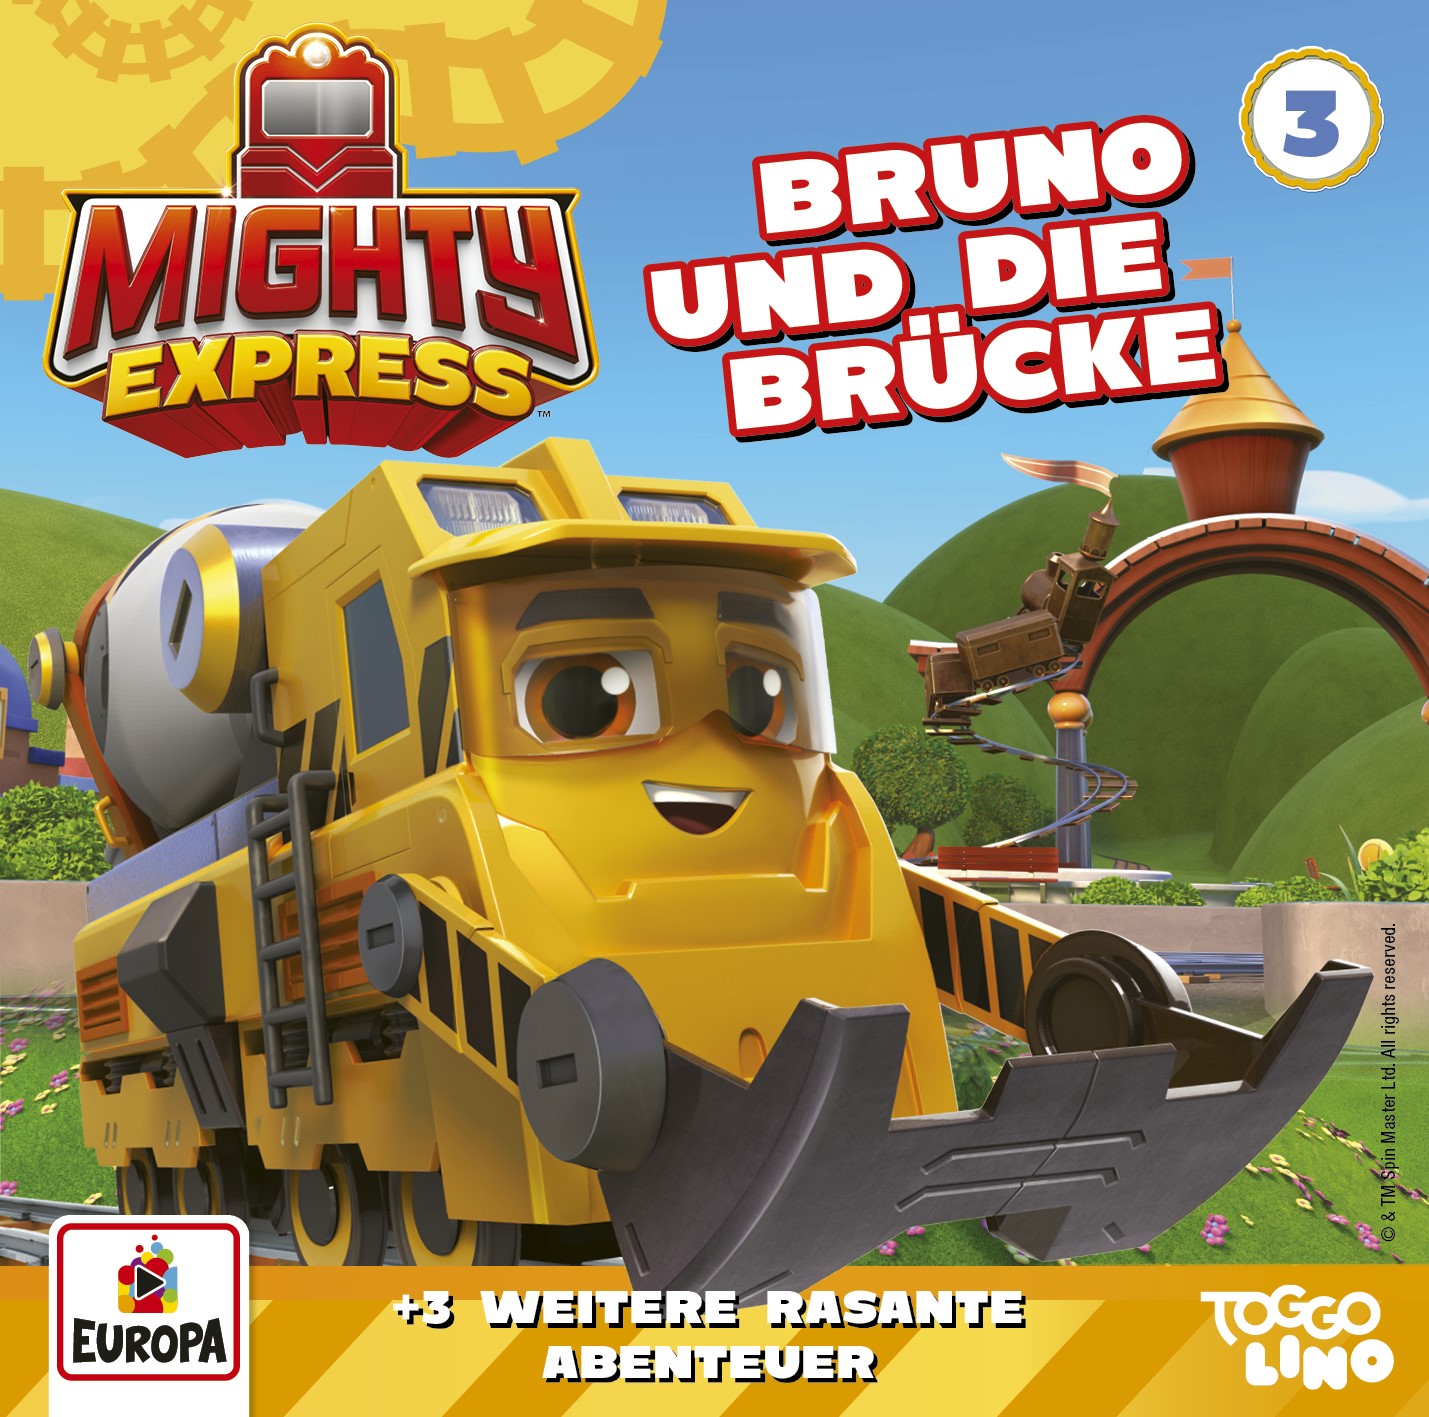 Mighty Express - Bruno und die Brücke